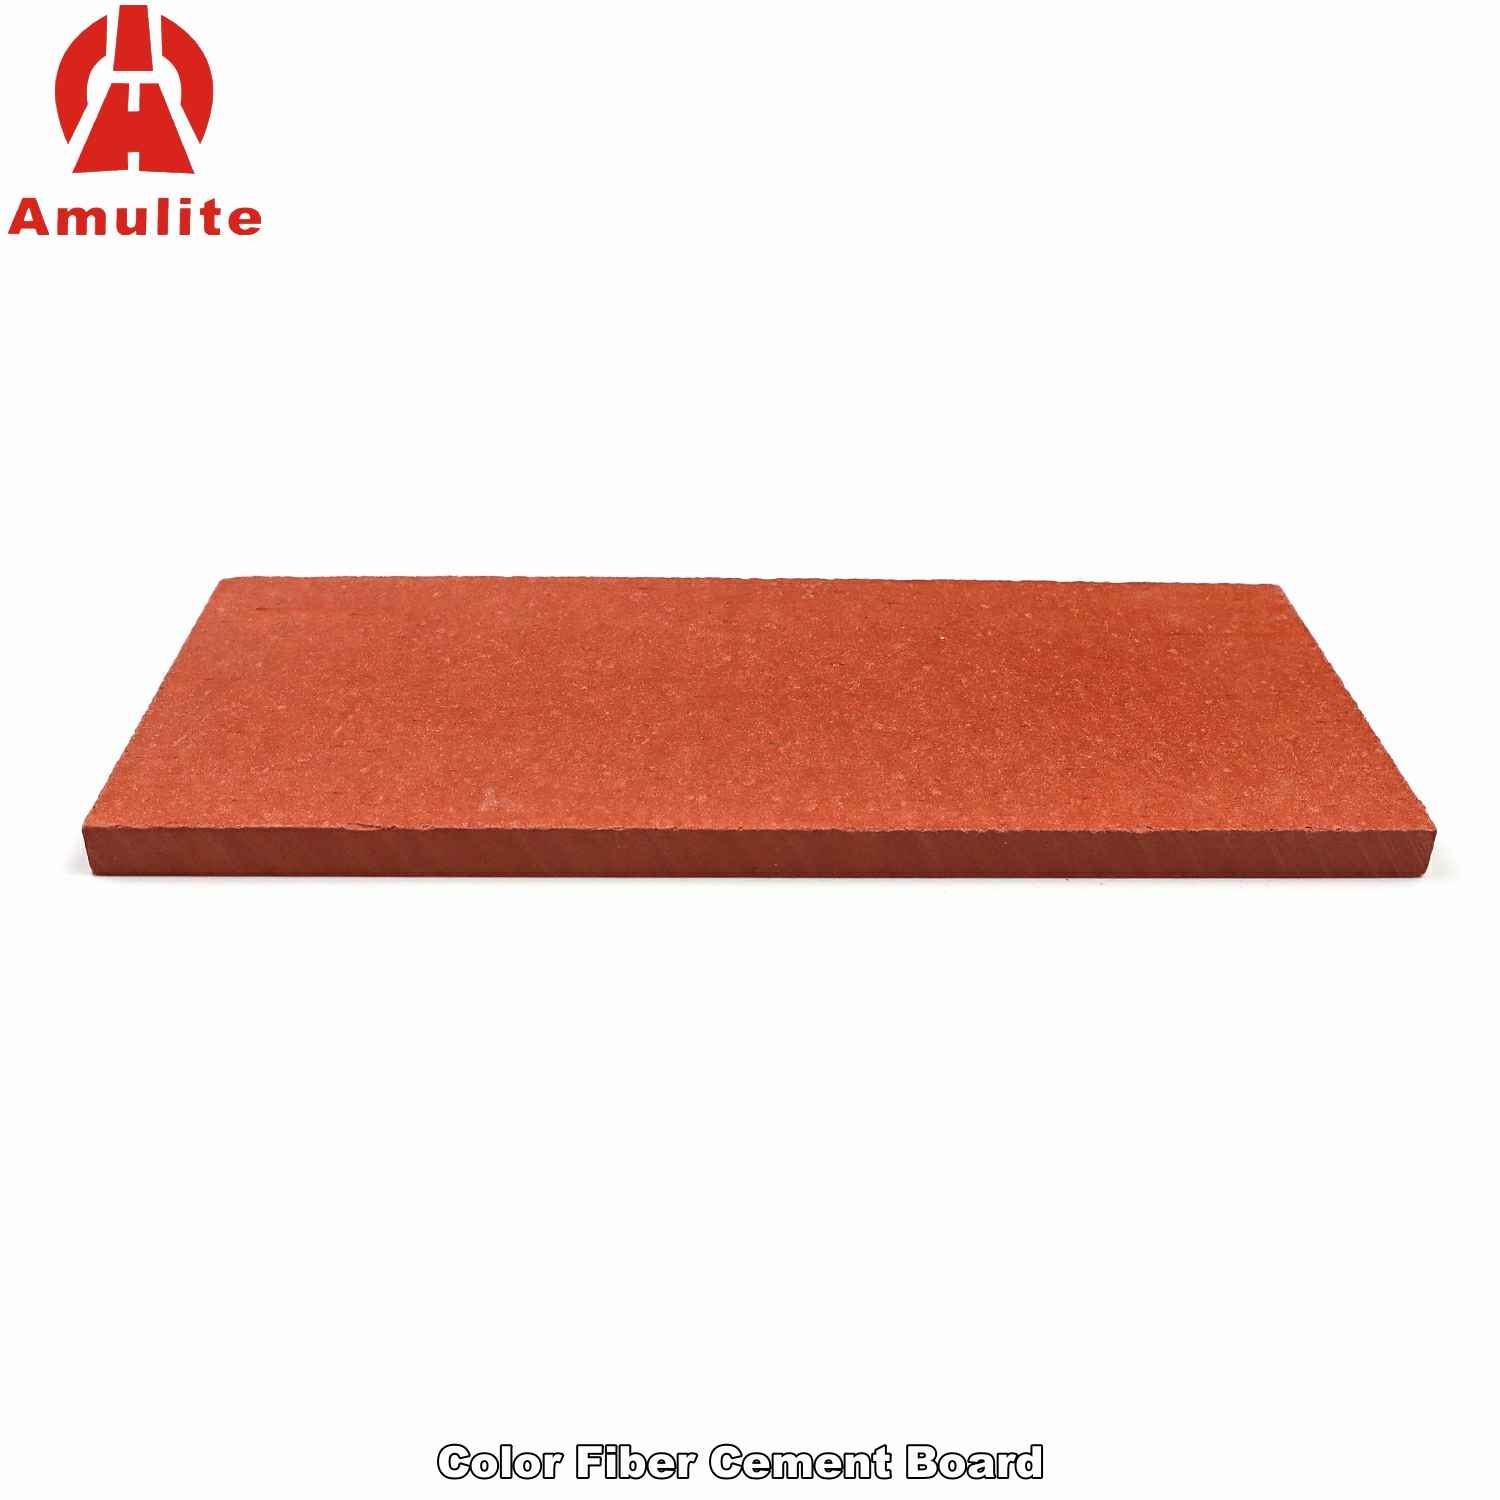 Color Fiber Cement Board (25)